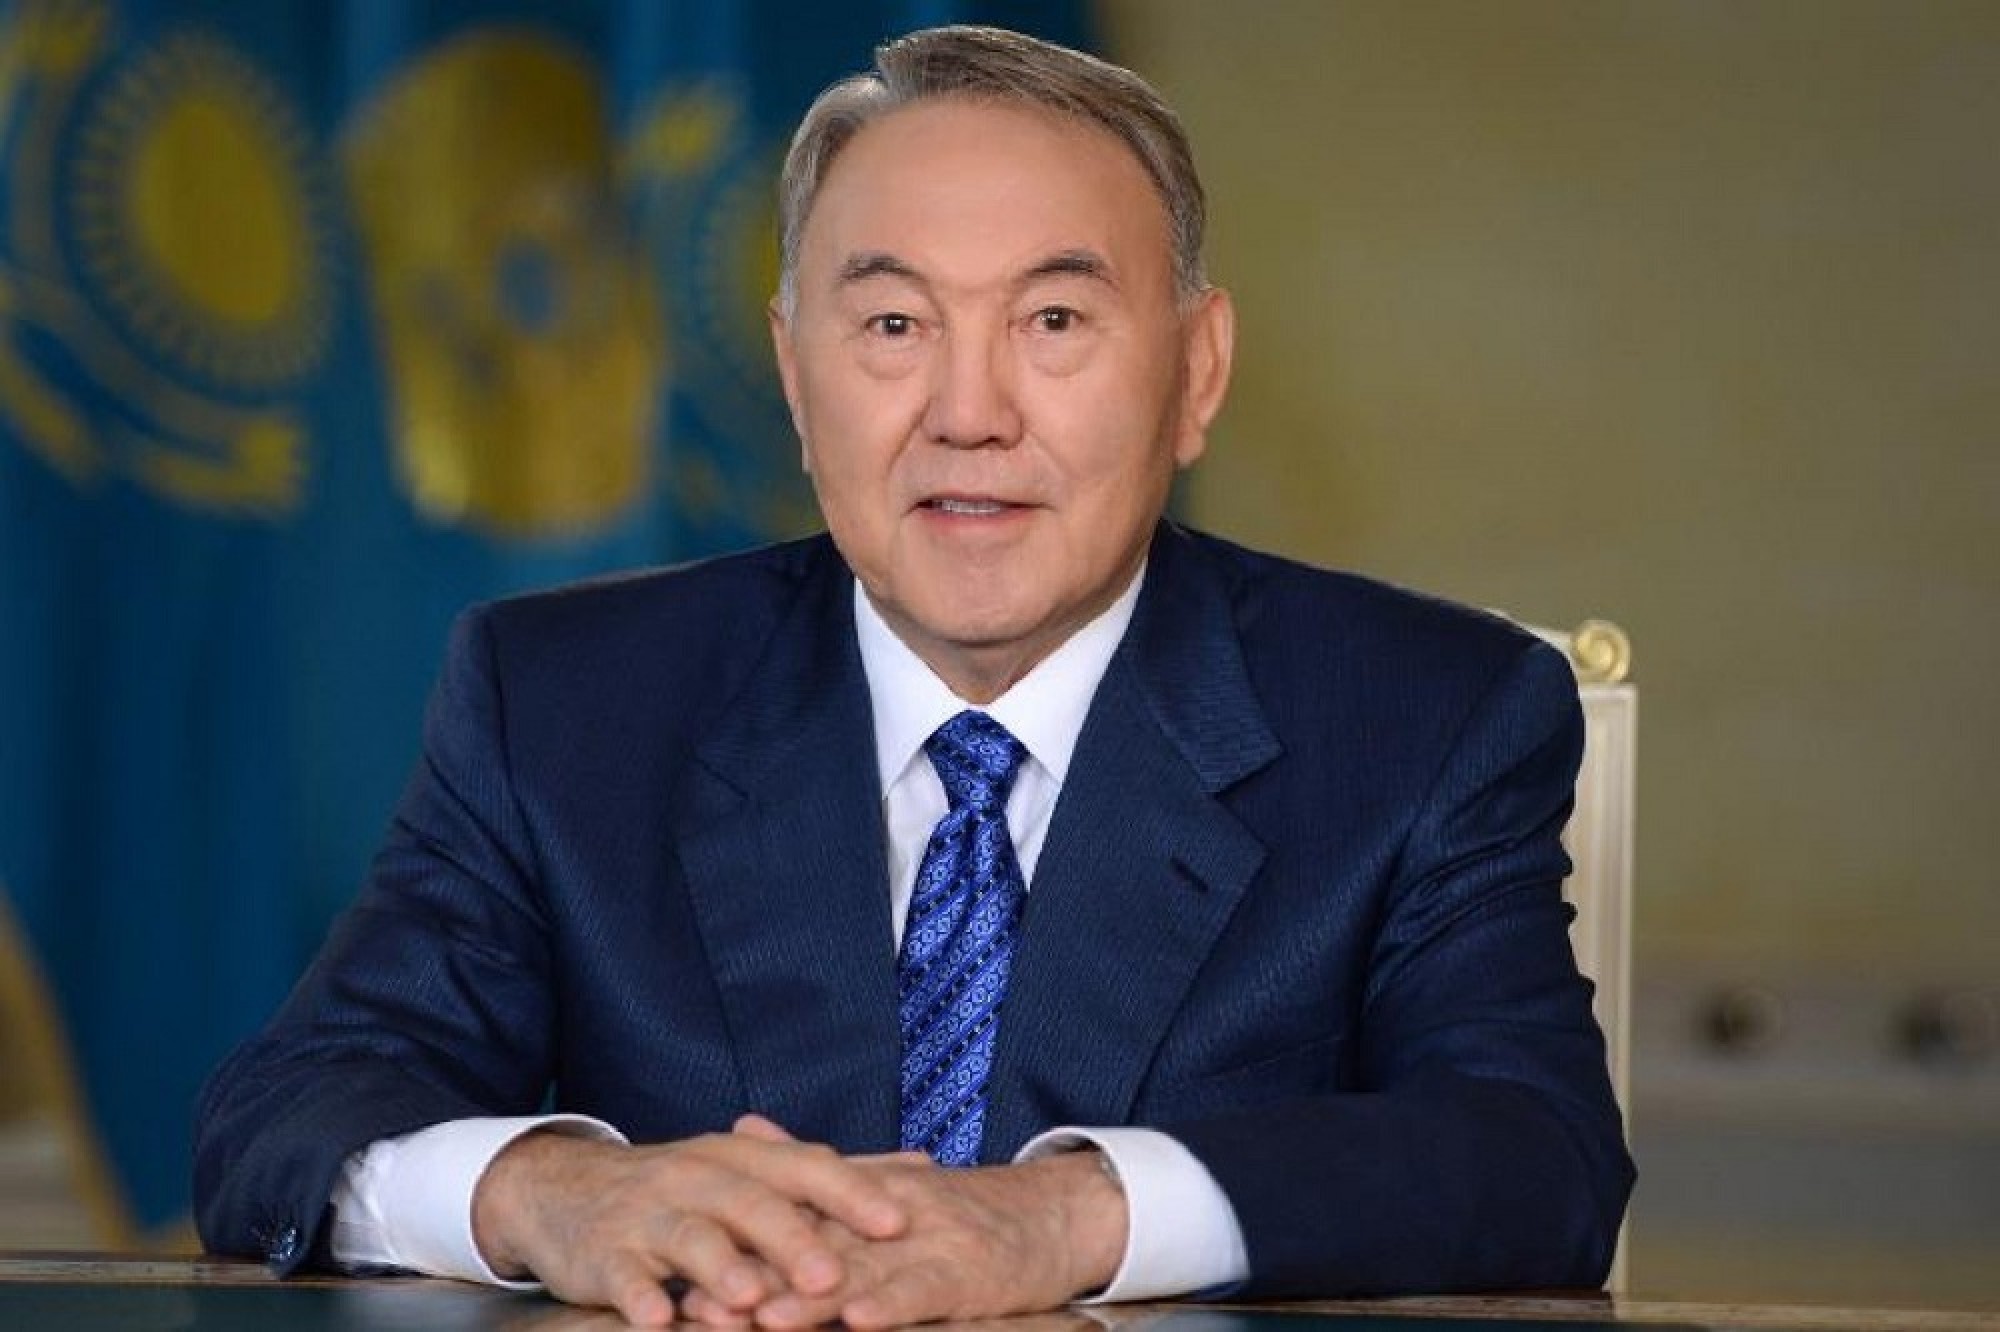 Nursultan Nazarbayev arrives in Aktobe city on working visit